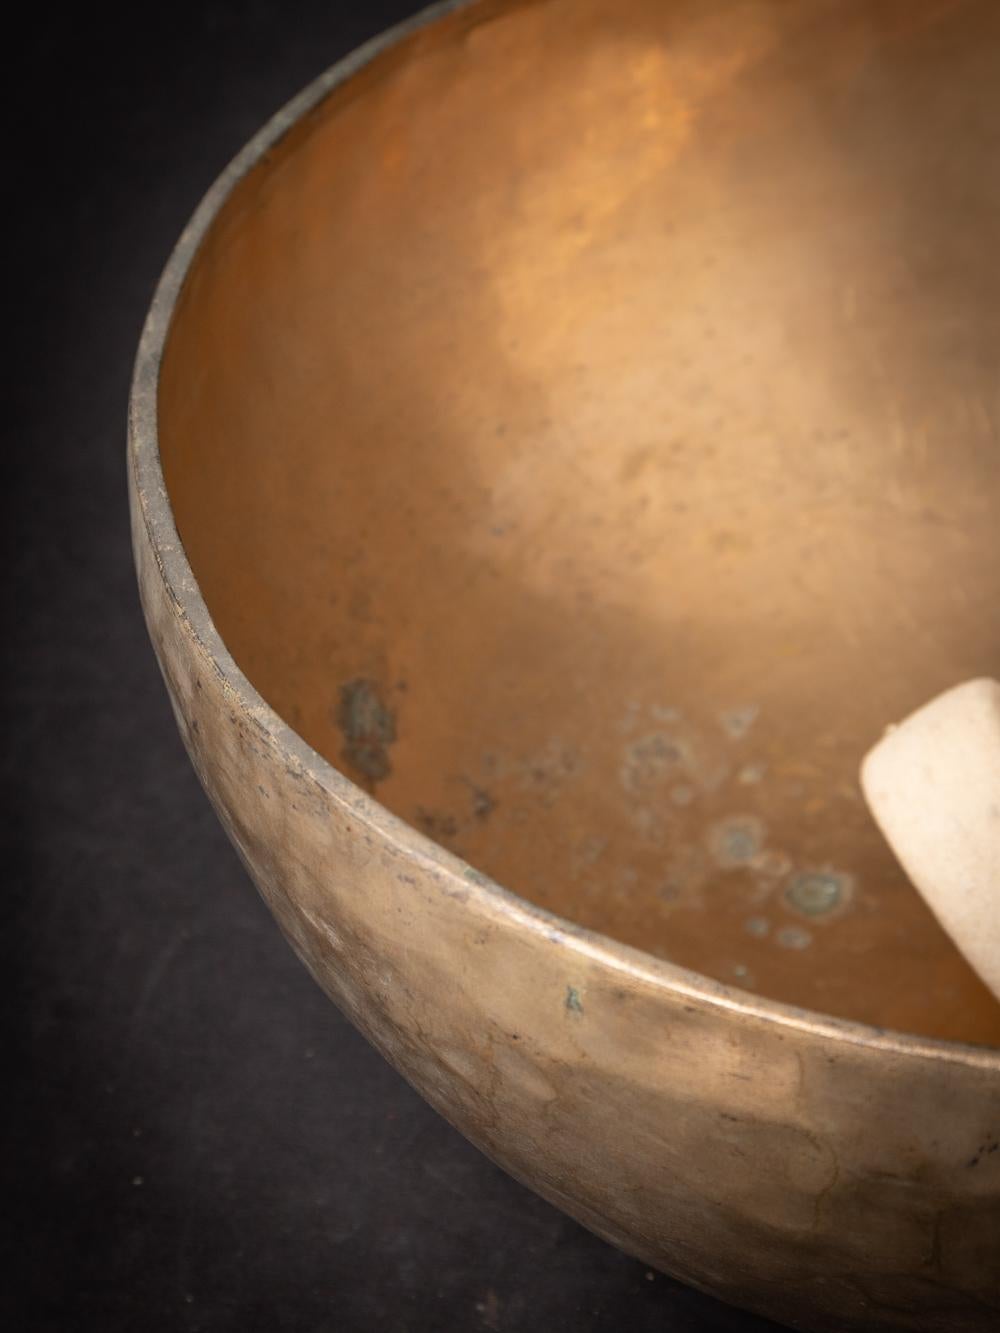 Le bol chantant népalais en vieux bronze témoigne de l'habileté de l'artisanat et de la tradition musicale de la région. Réalisé en bronze, ce bol chantant mesure 17,5 cm de haut et 41,5 cm de diamètre. Fabriqué dans un souci de haute qualité, ce